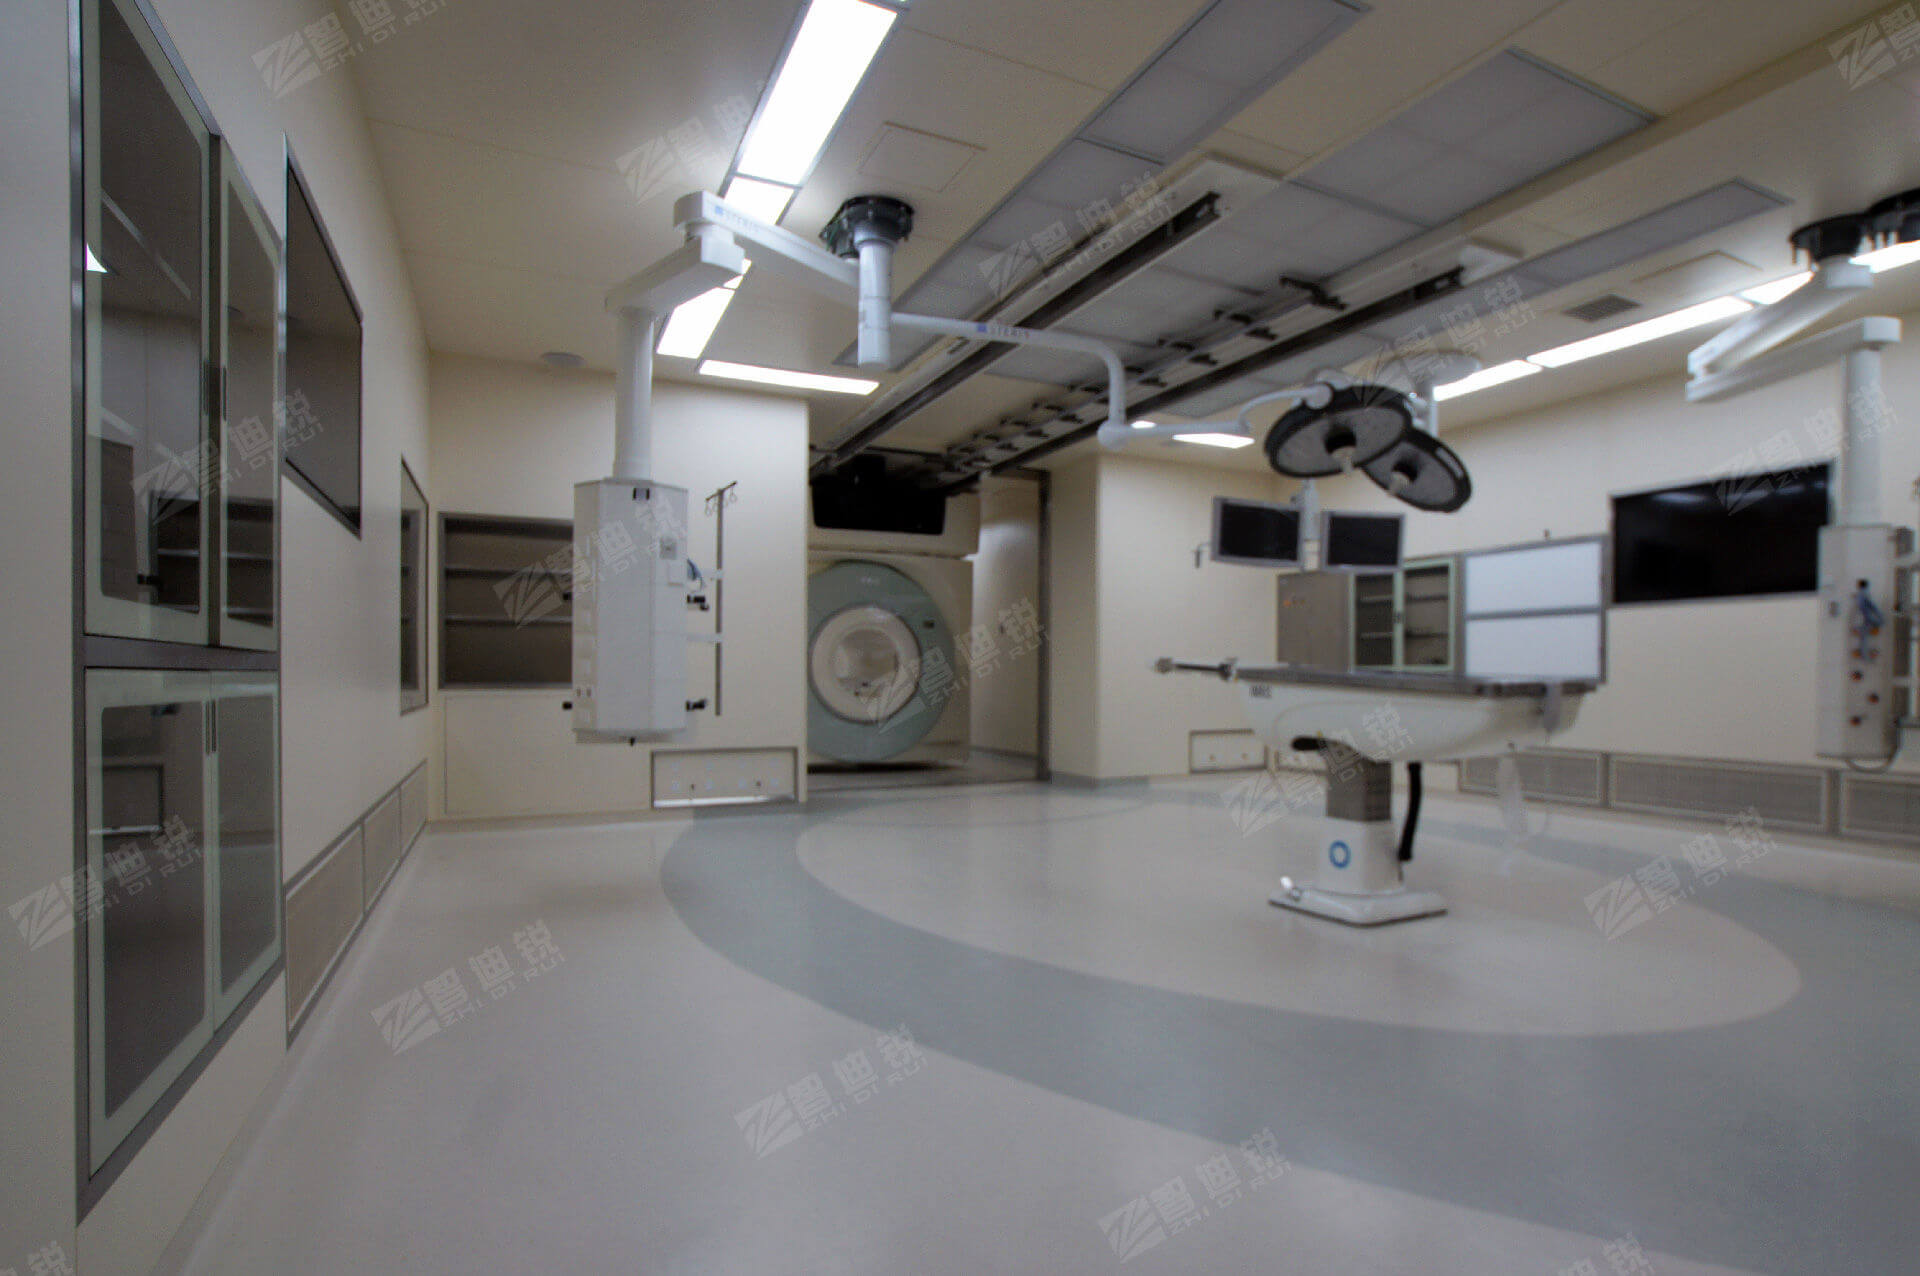 术中磁共振百级手术室